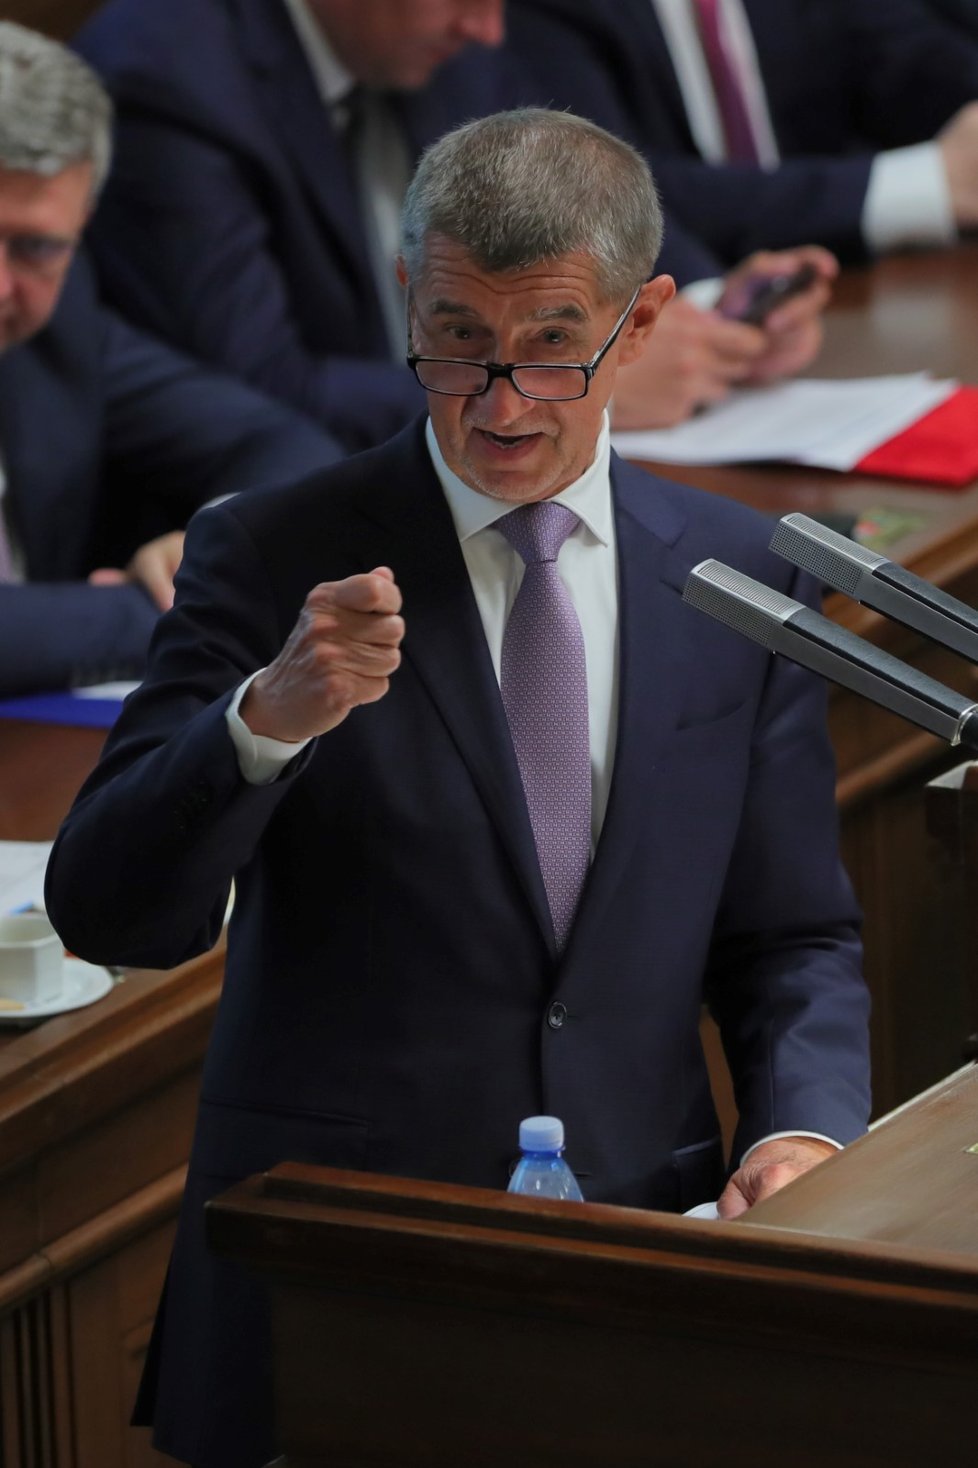 Premiér Andrej Babiš při jednání Poslanecké sněmovny (4. 6. 2019)